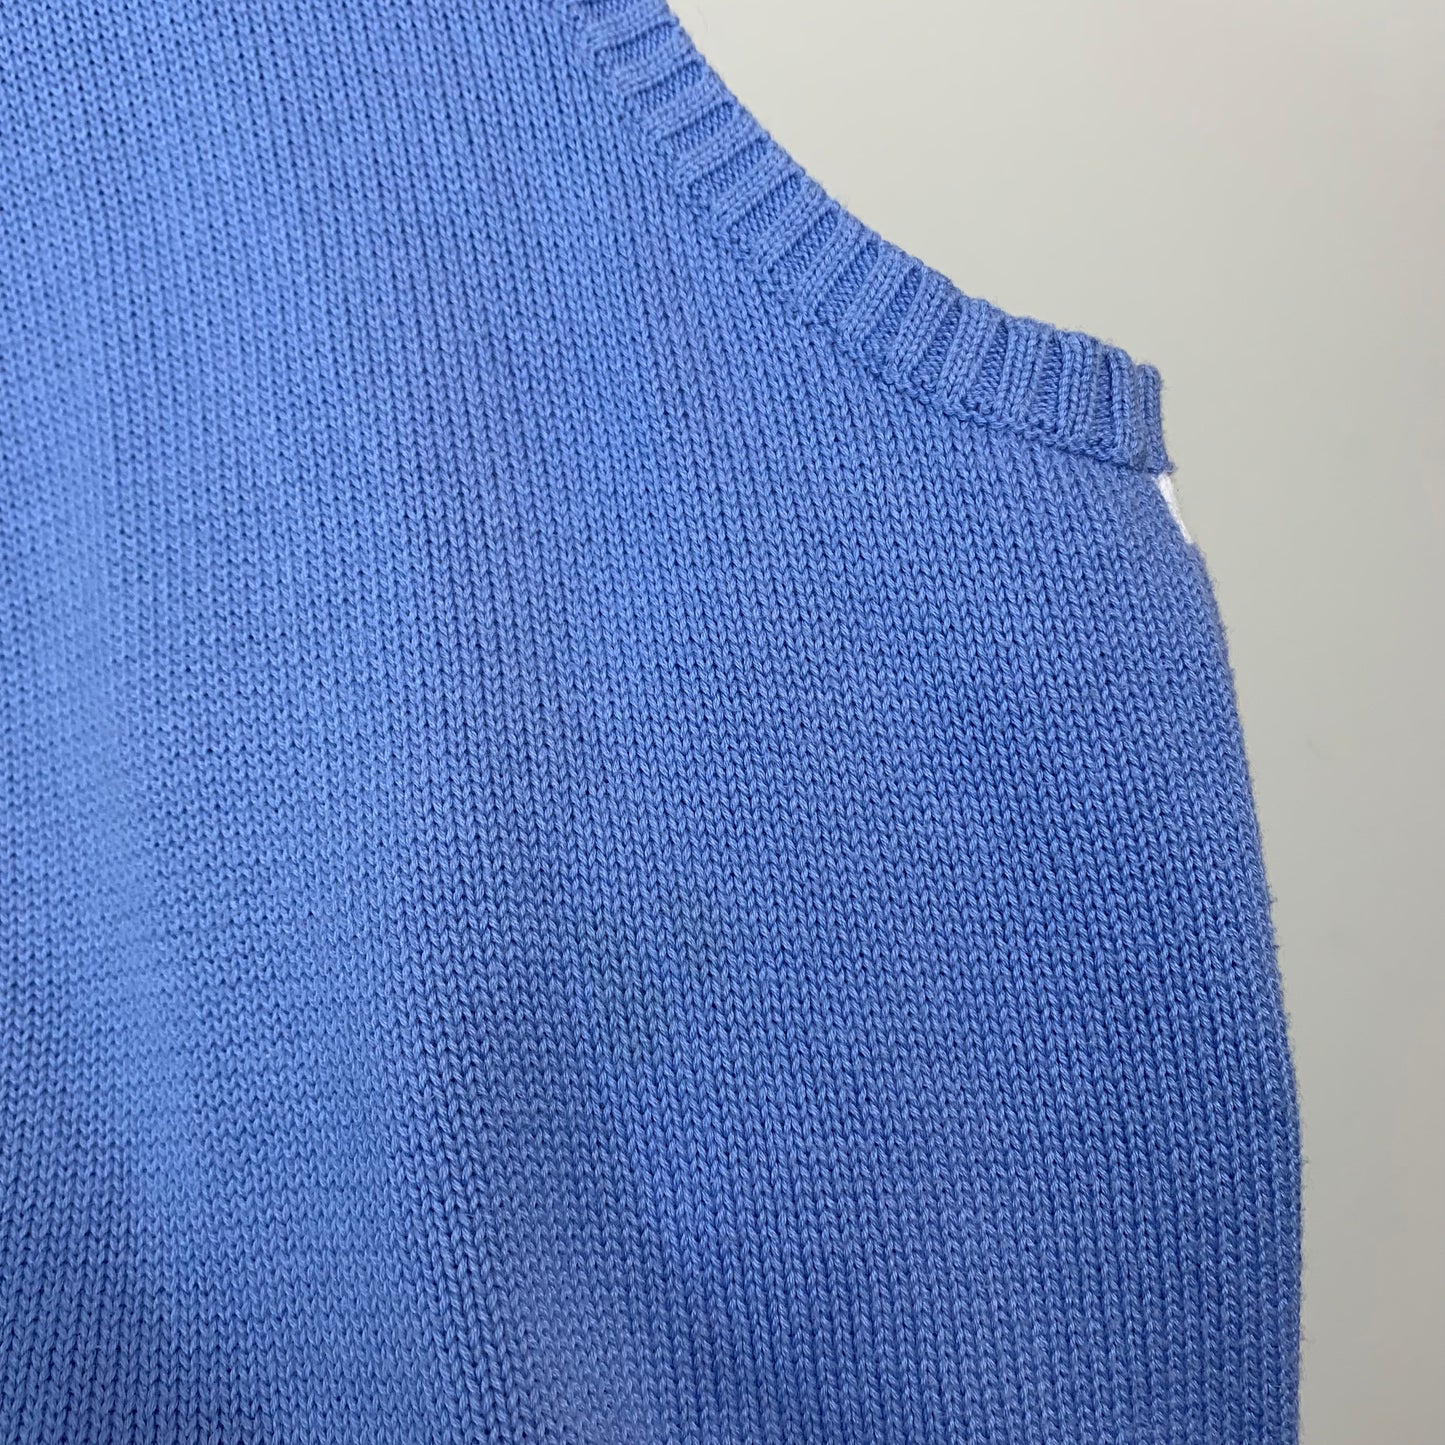 Vintage 90s Polo by Ralph Lauren Sweater Vest Blue Single Striped Cotton Medium